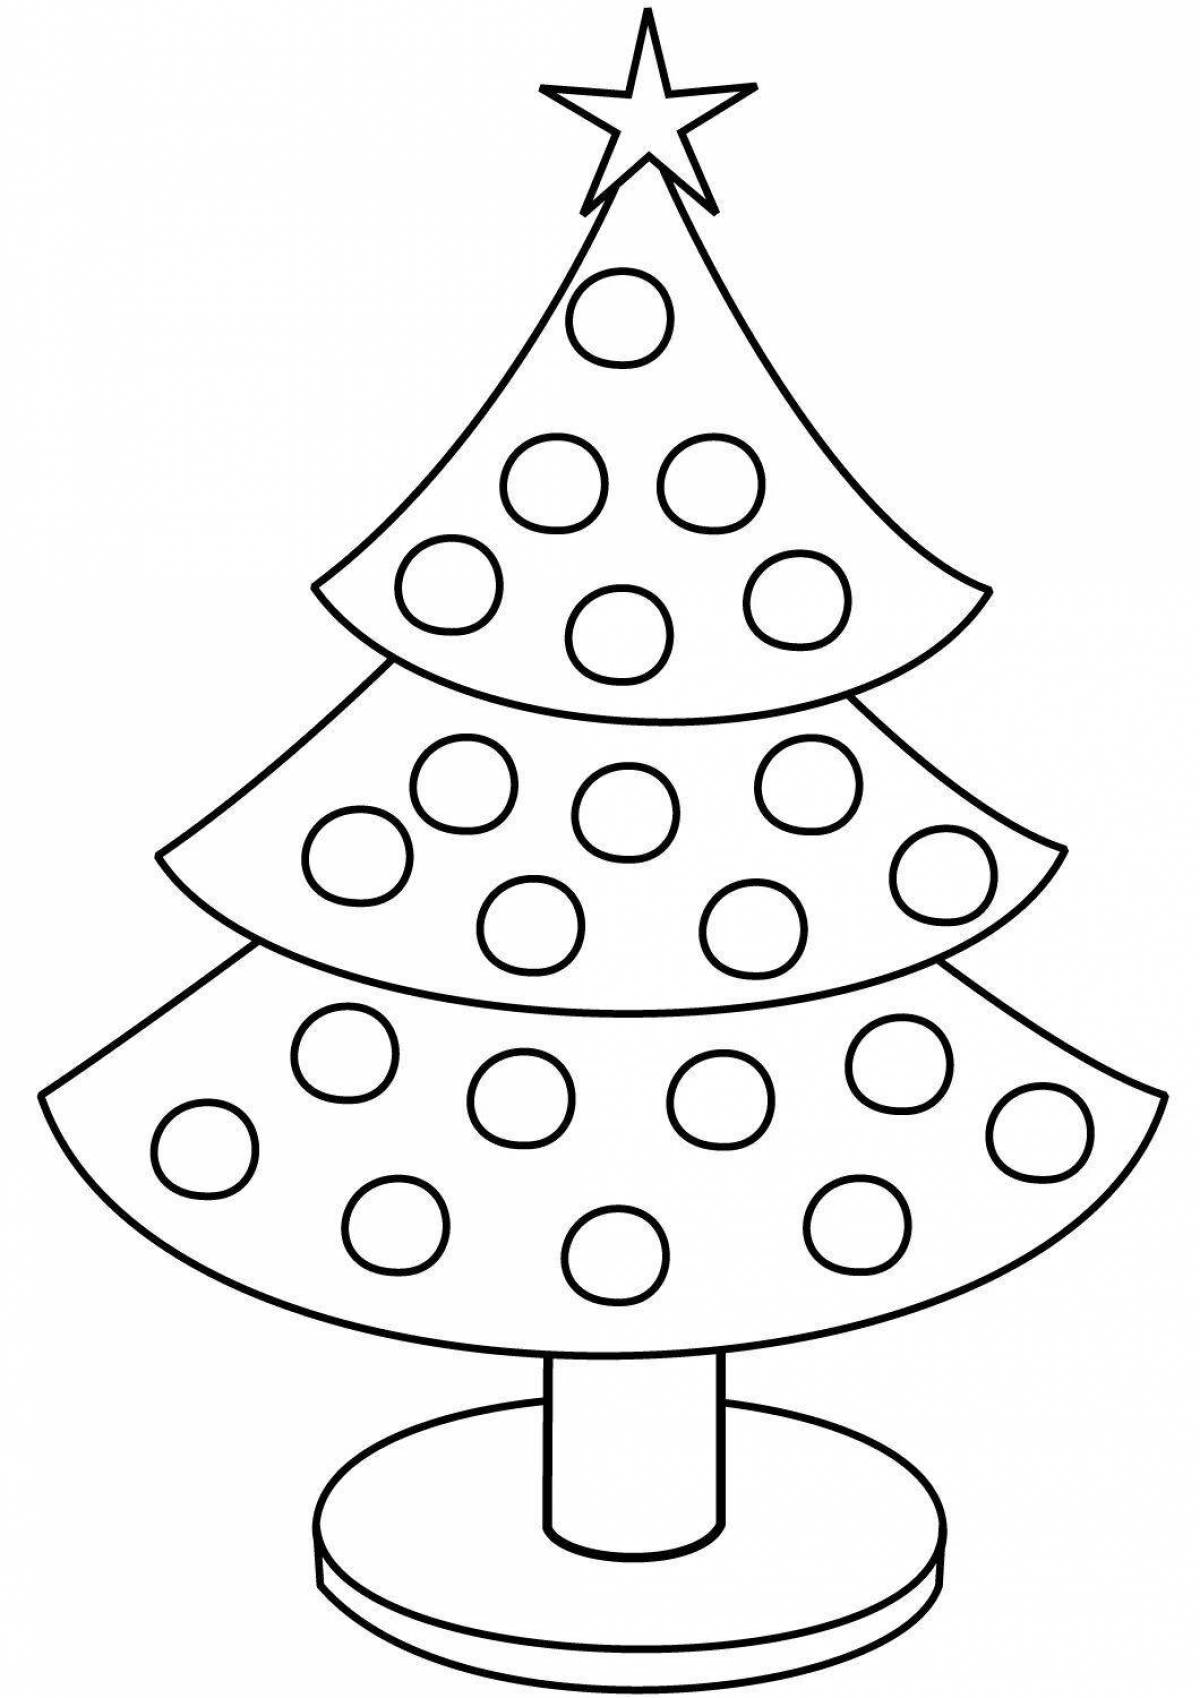 Раскраска ослепительной рождественской елки для детей 5-6 лет